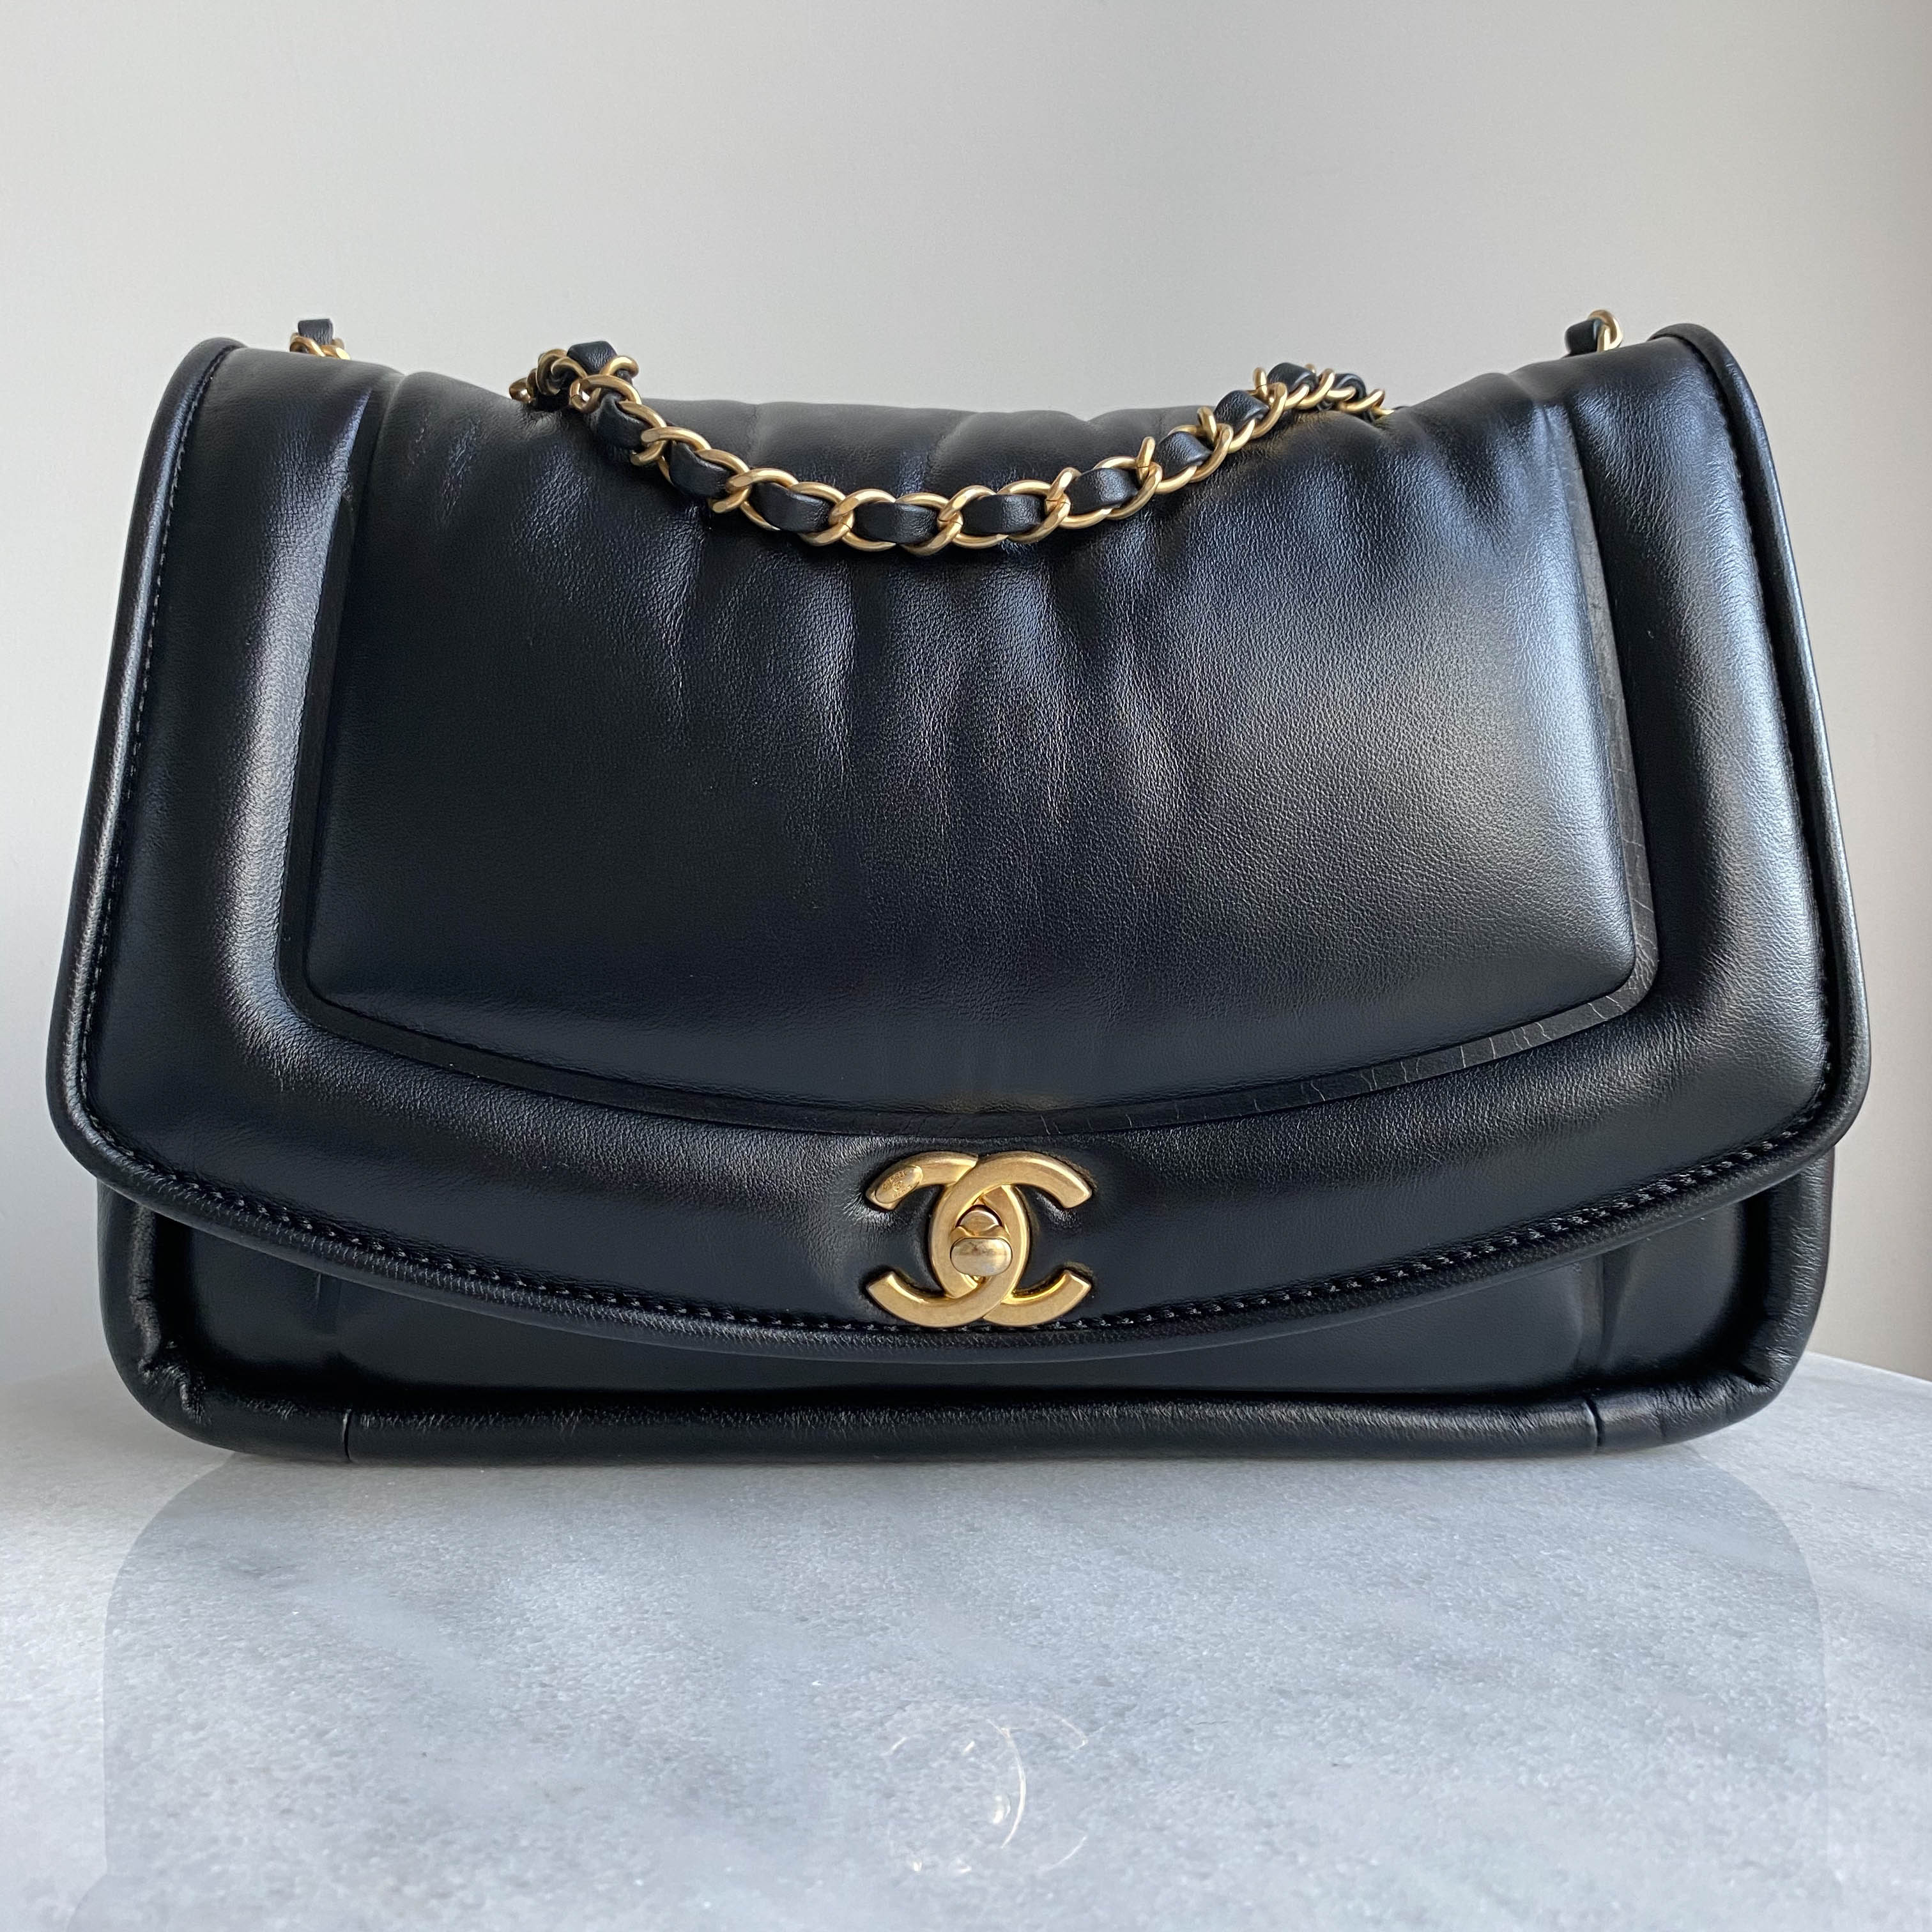 CHANEL Medium Vintage Puffy Flap Bag in Black Lambskin| Dearluxe